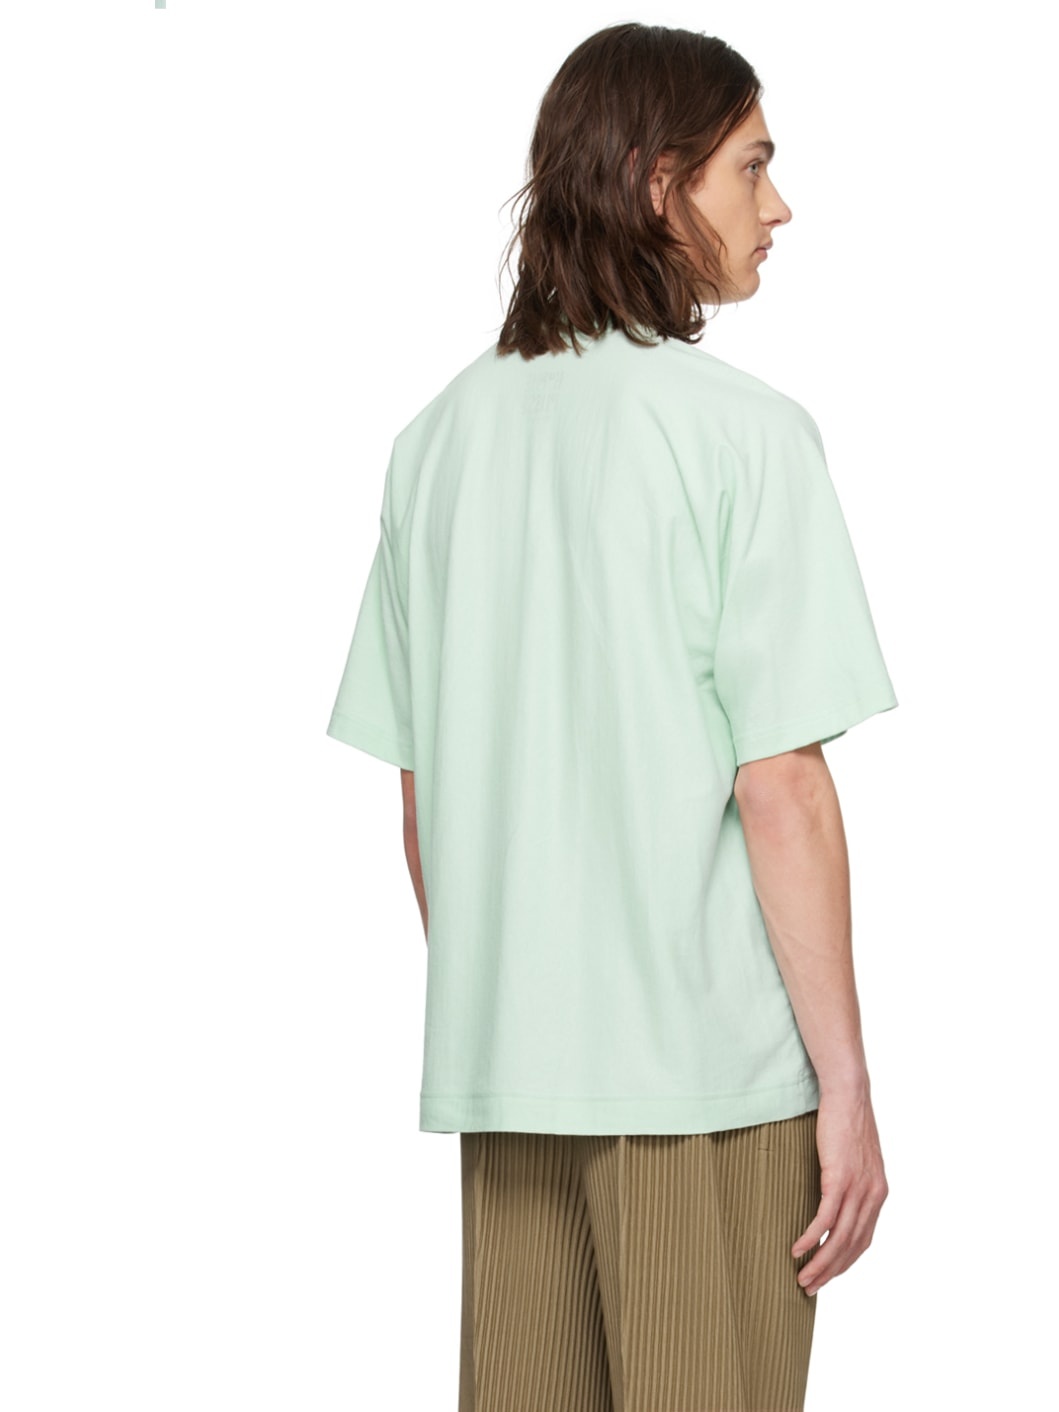 Green Release-T 2 T-Shirt - 3